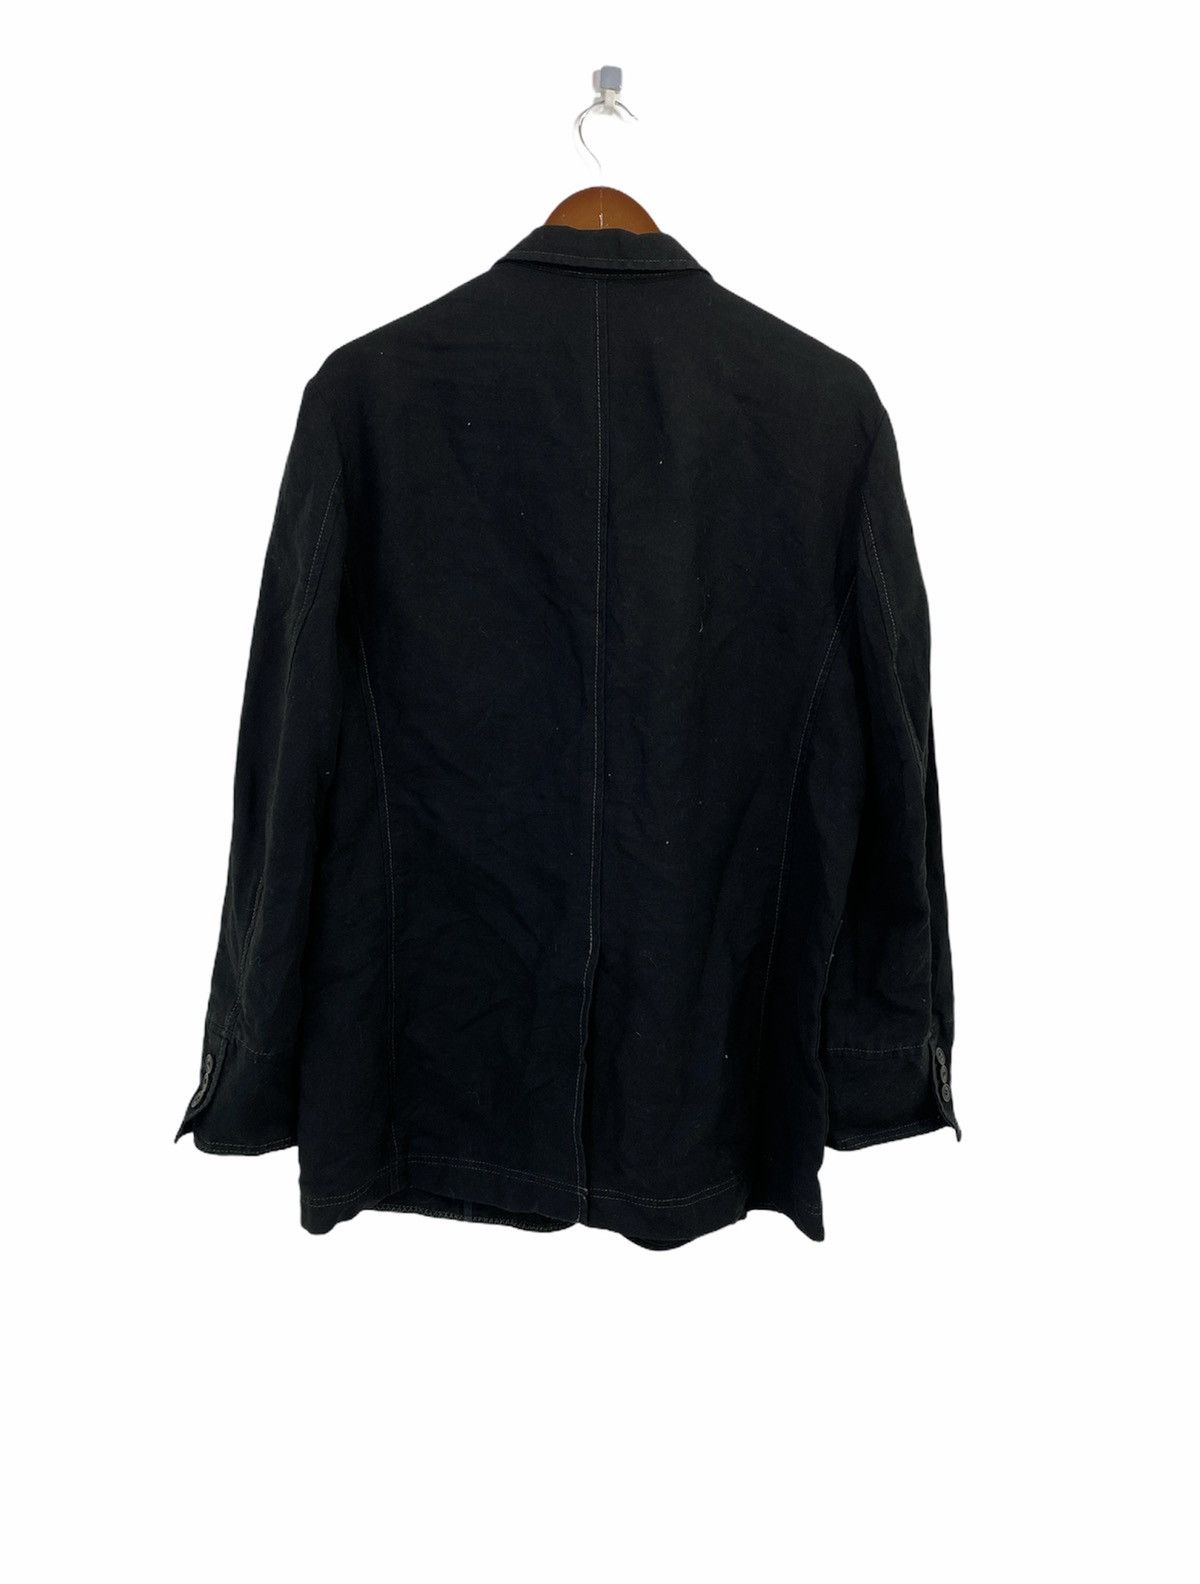 Lanvin Linen Jacket 4 Pocket Design Made in Japan - 2